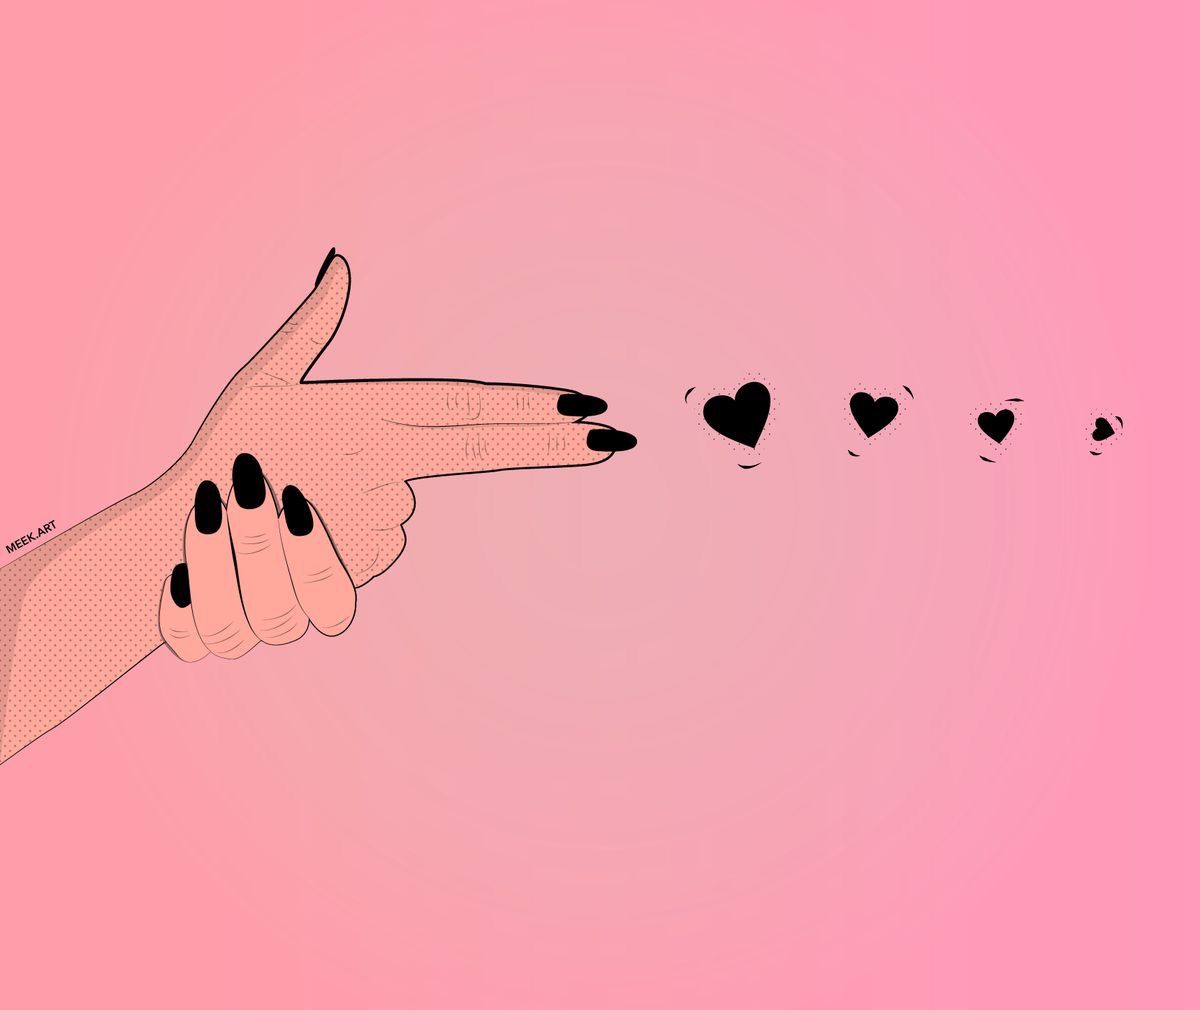 fb tapete,rosa,hand,illustration,flügel,geste